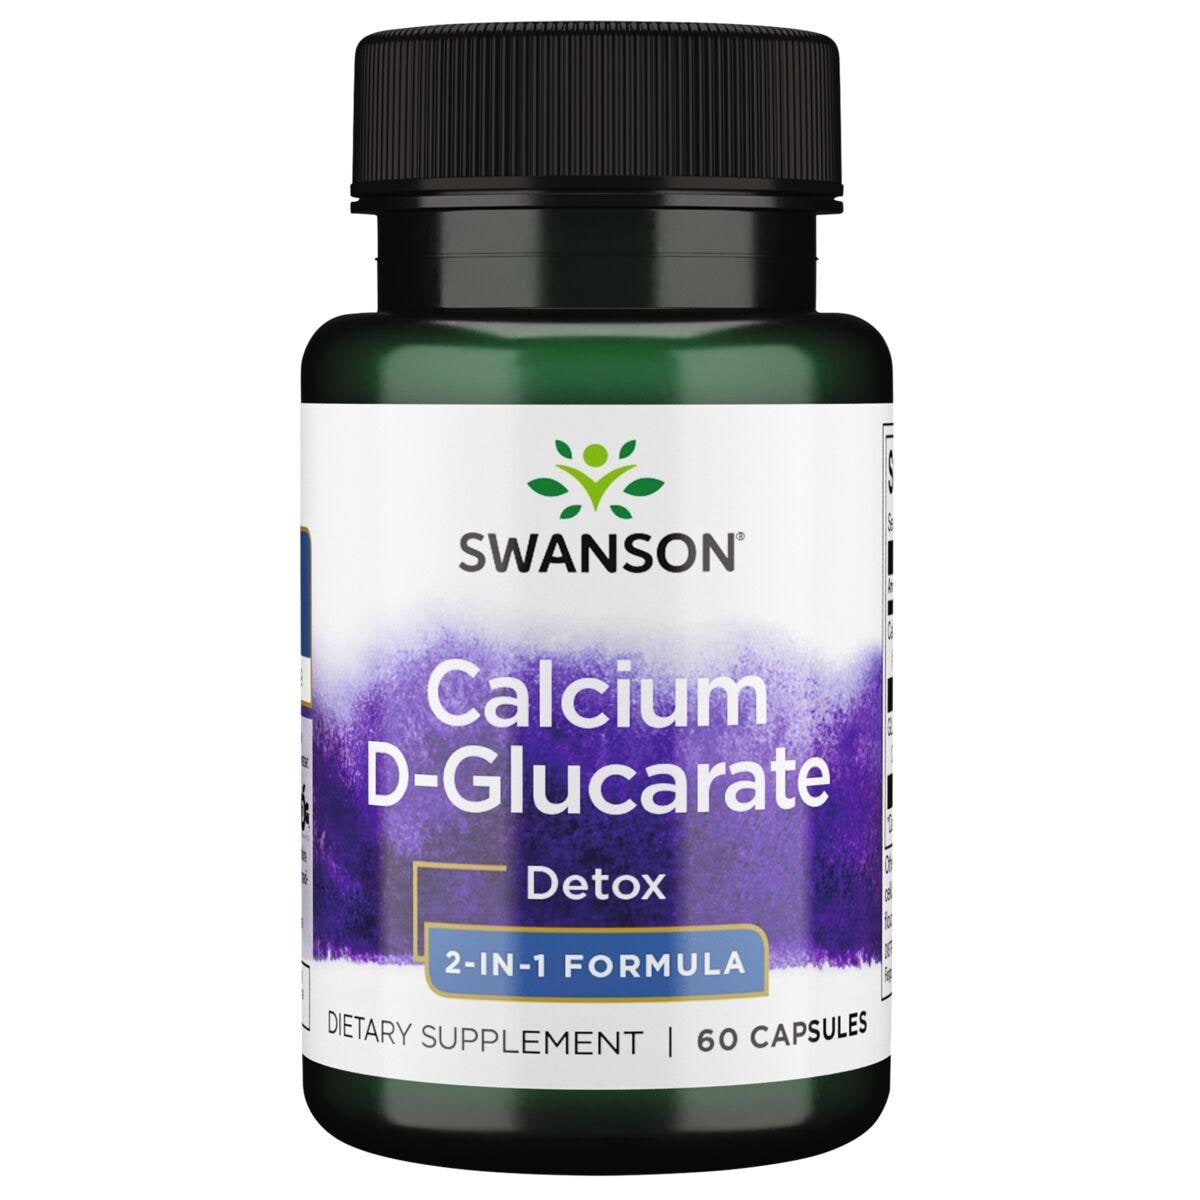 Swanson Ultra Calcium D-Glucarate - 2-in-1 Formula Vitamin | 60 Caps